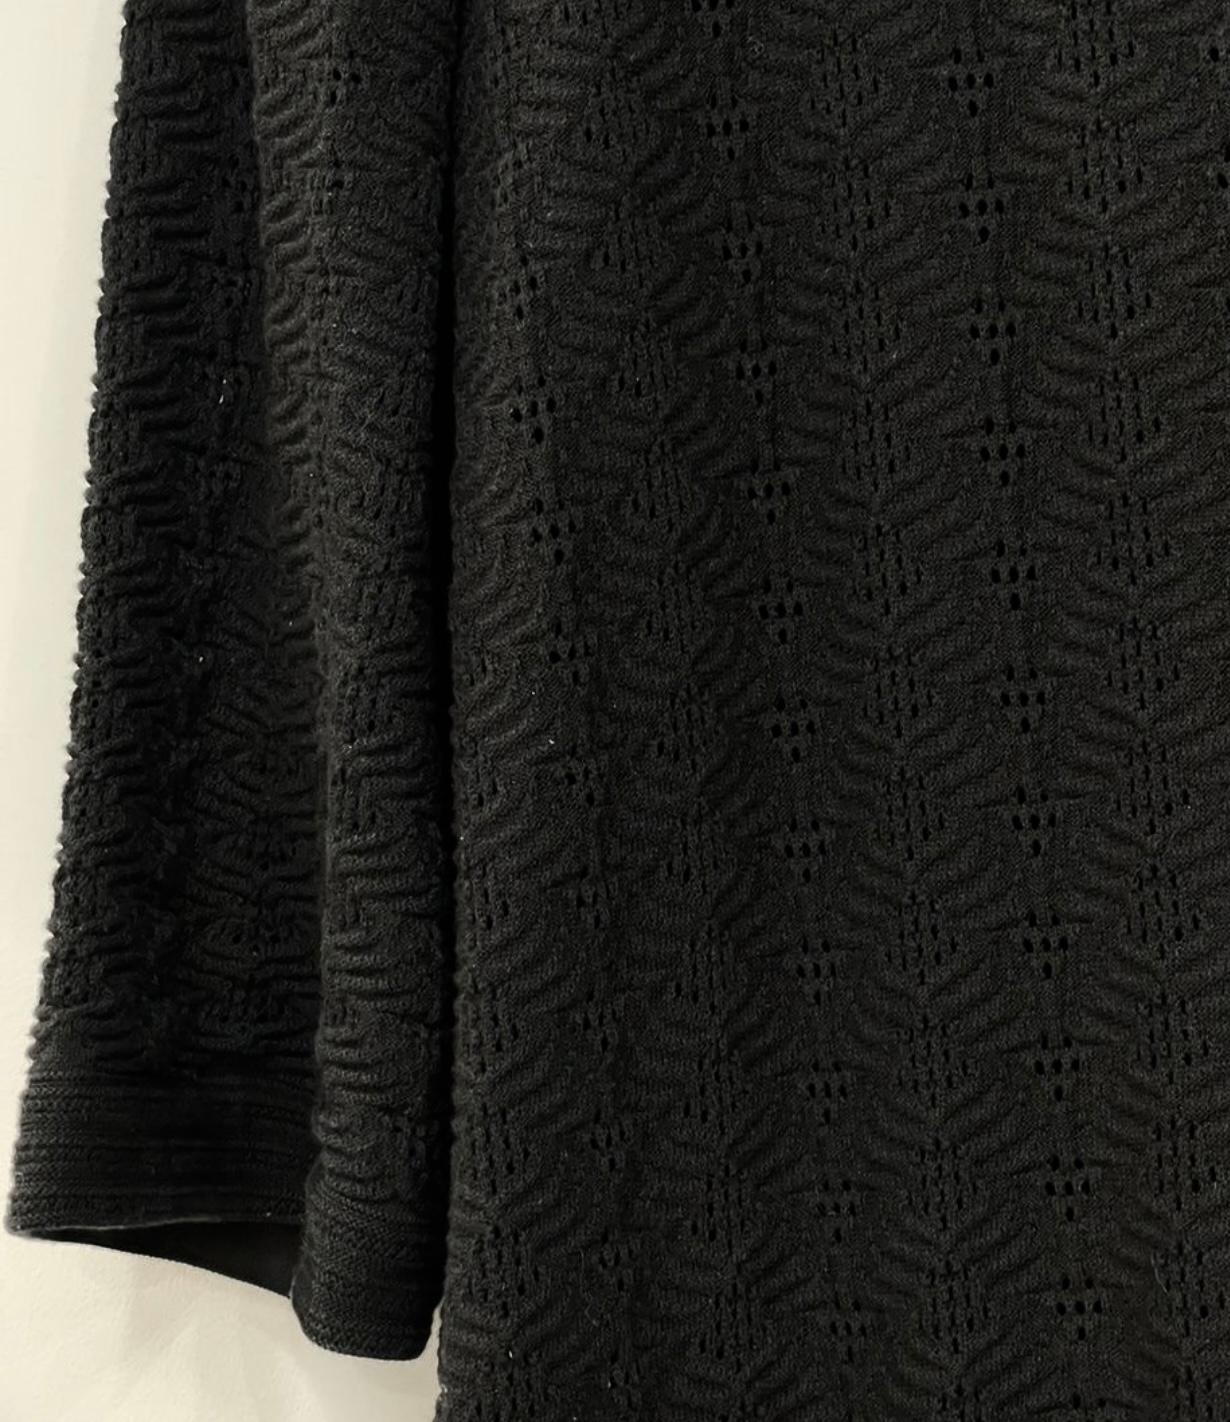 Chanel CC Buttons Paris / Singapore Black Dress For Sale 2